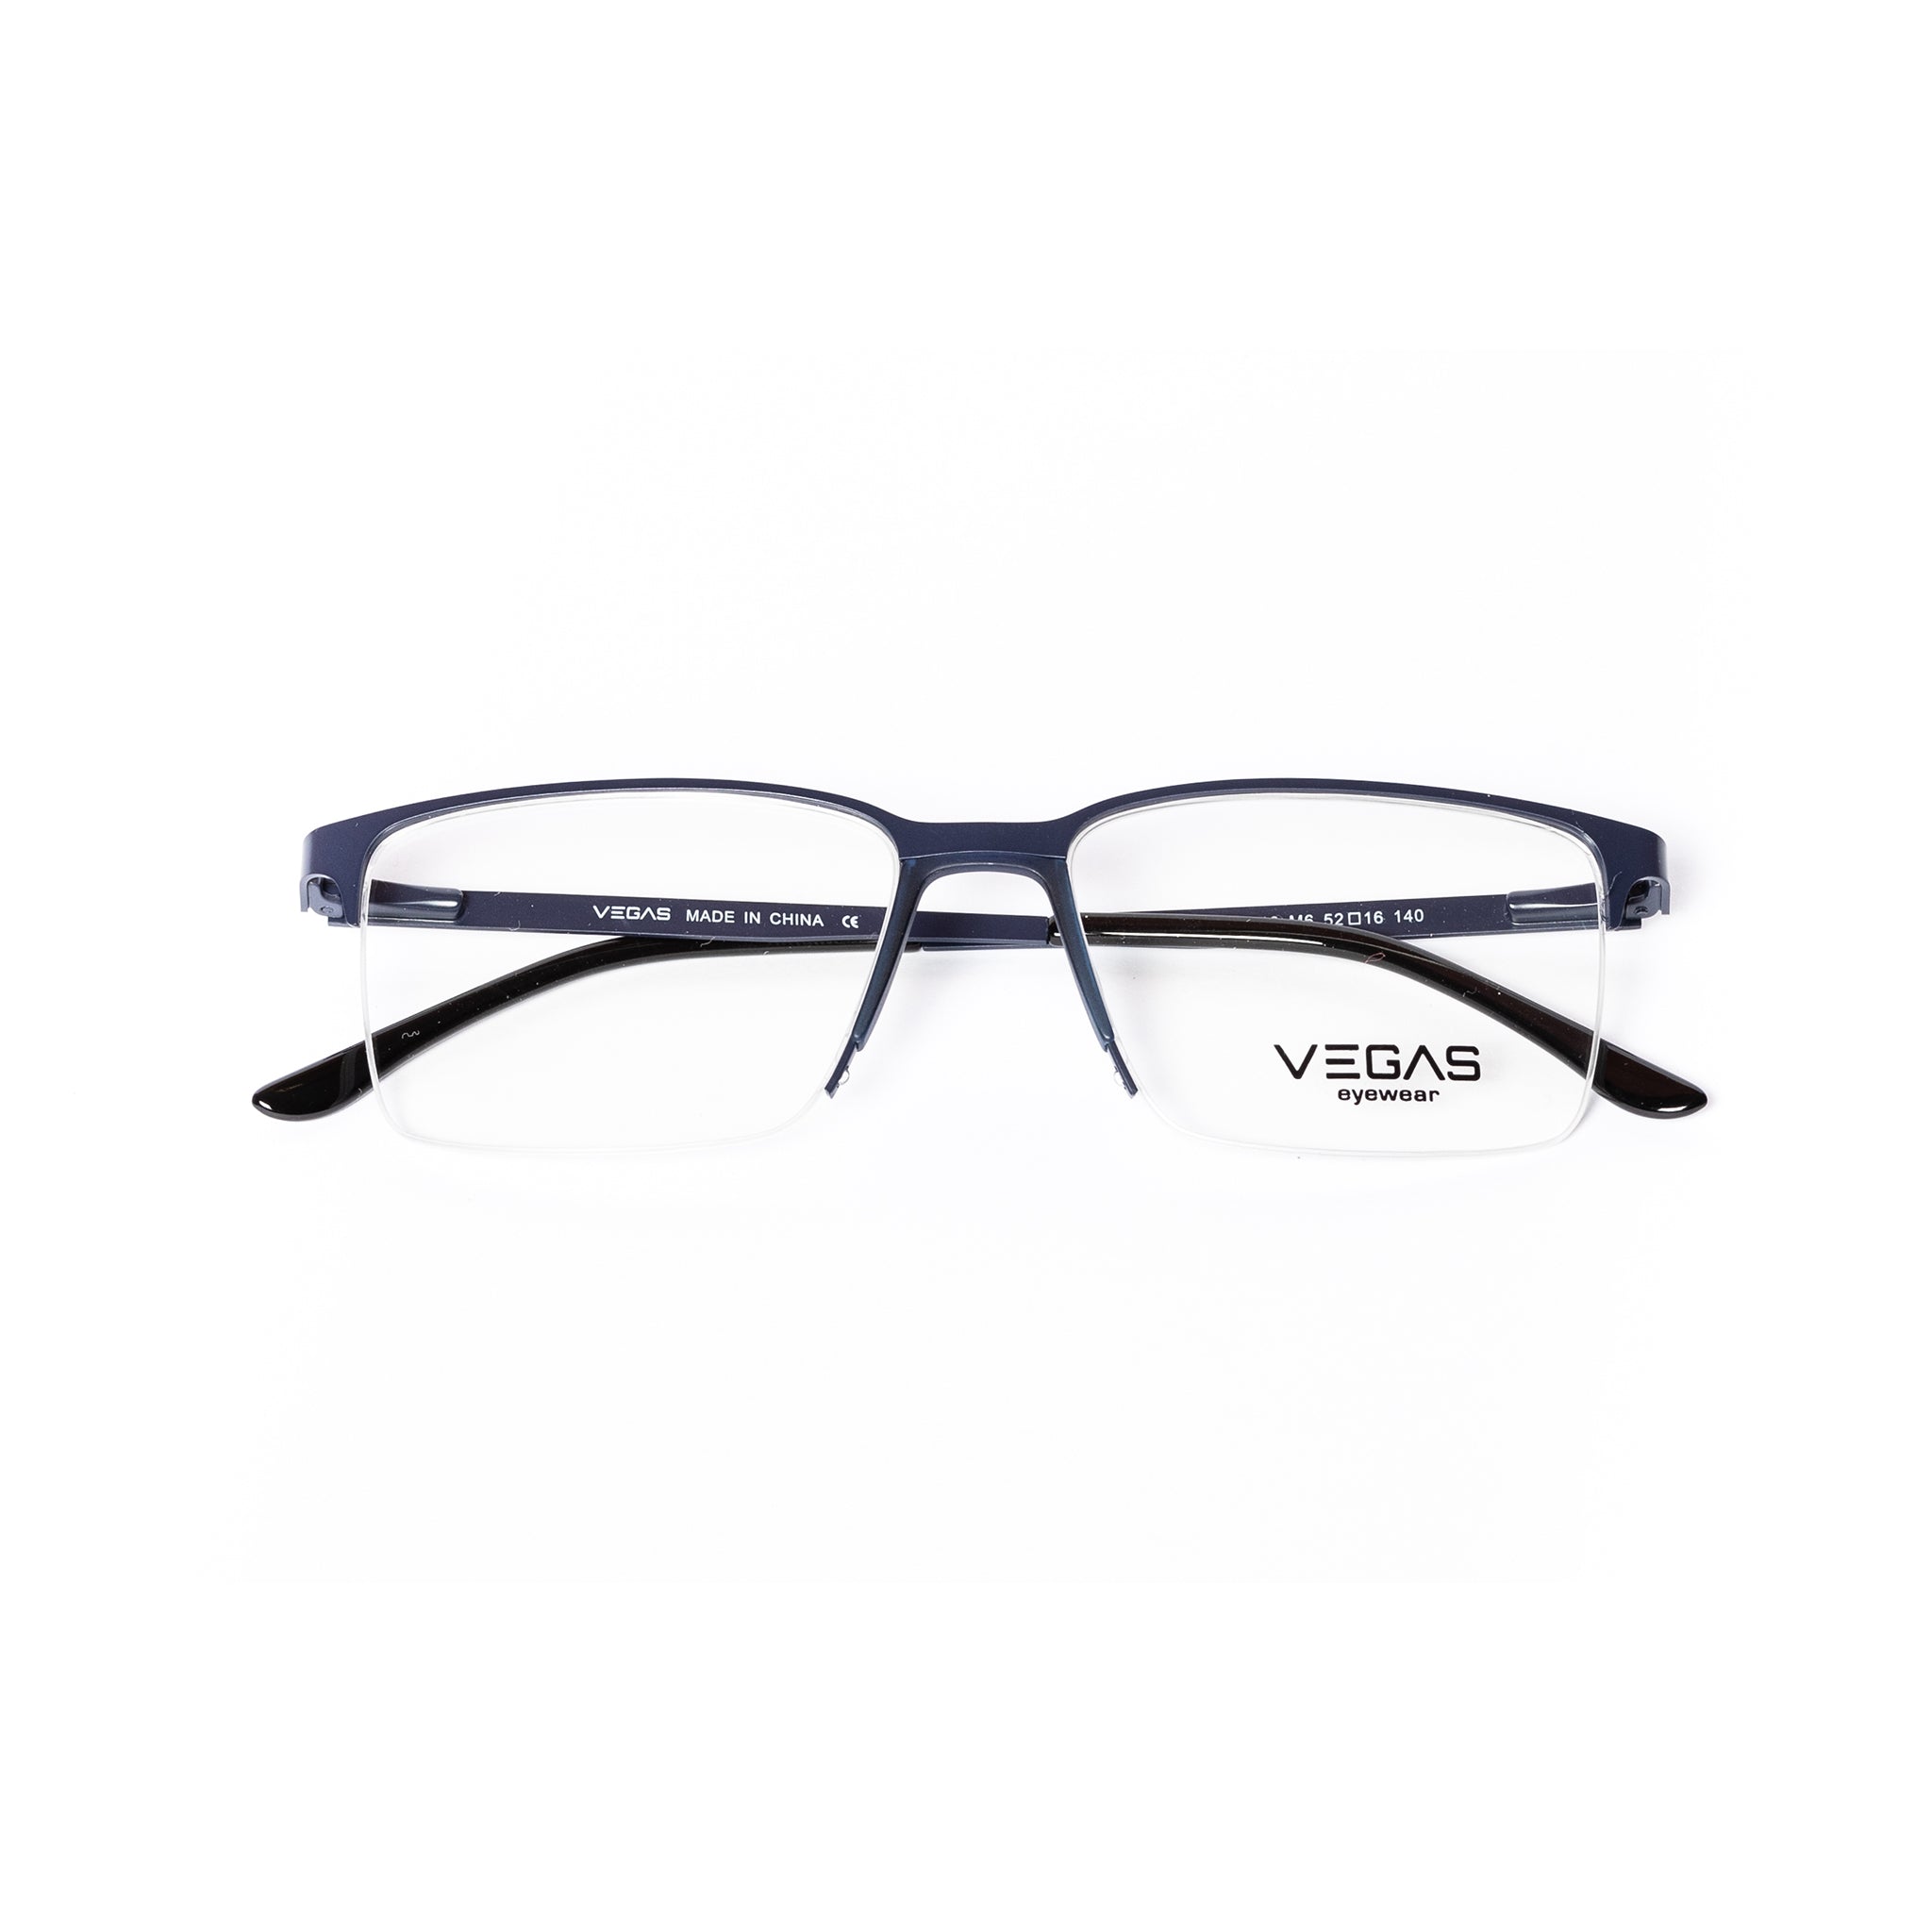 VEGAS P8510 - COC Eyewear